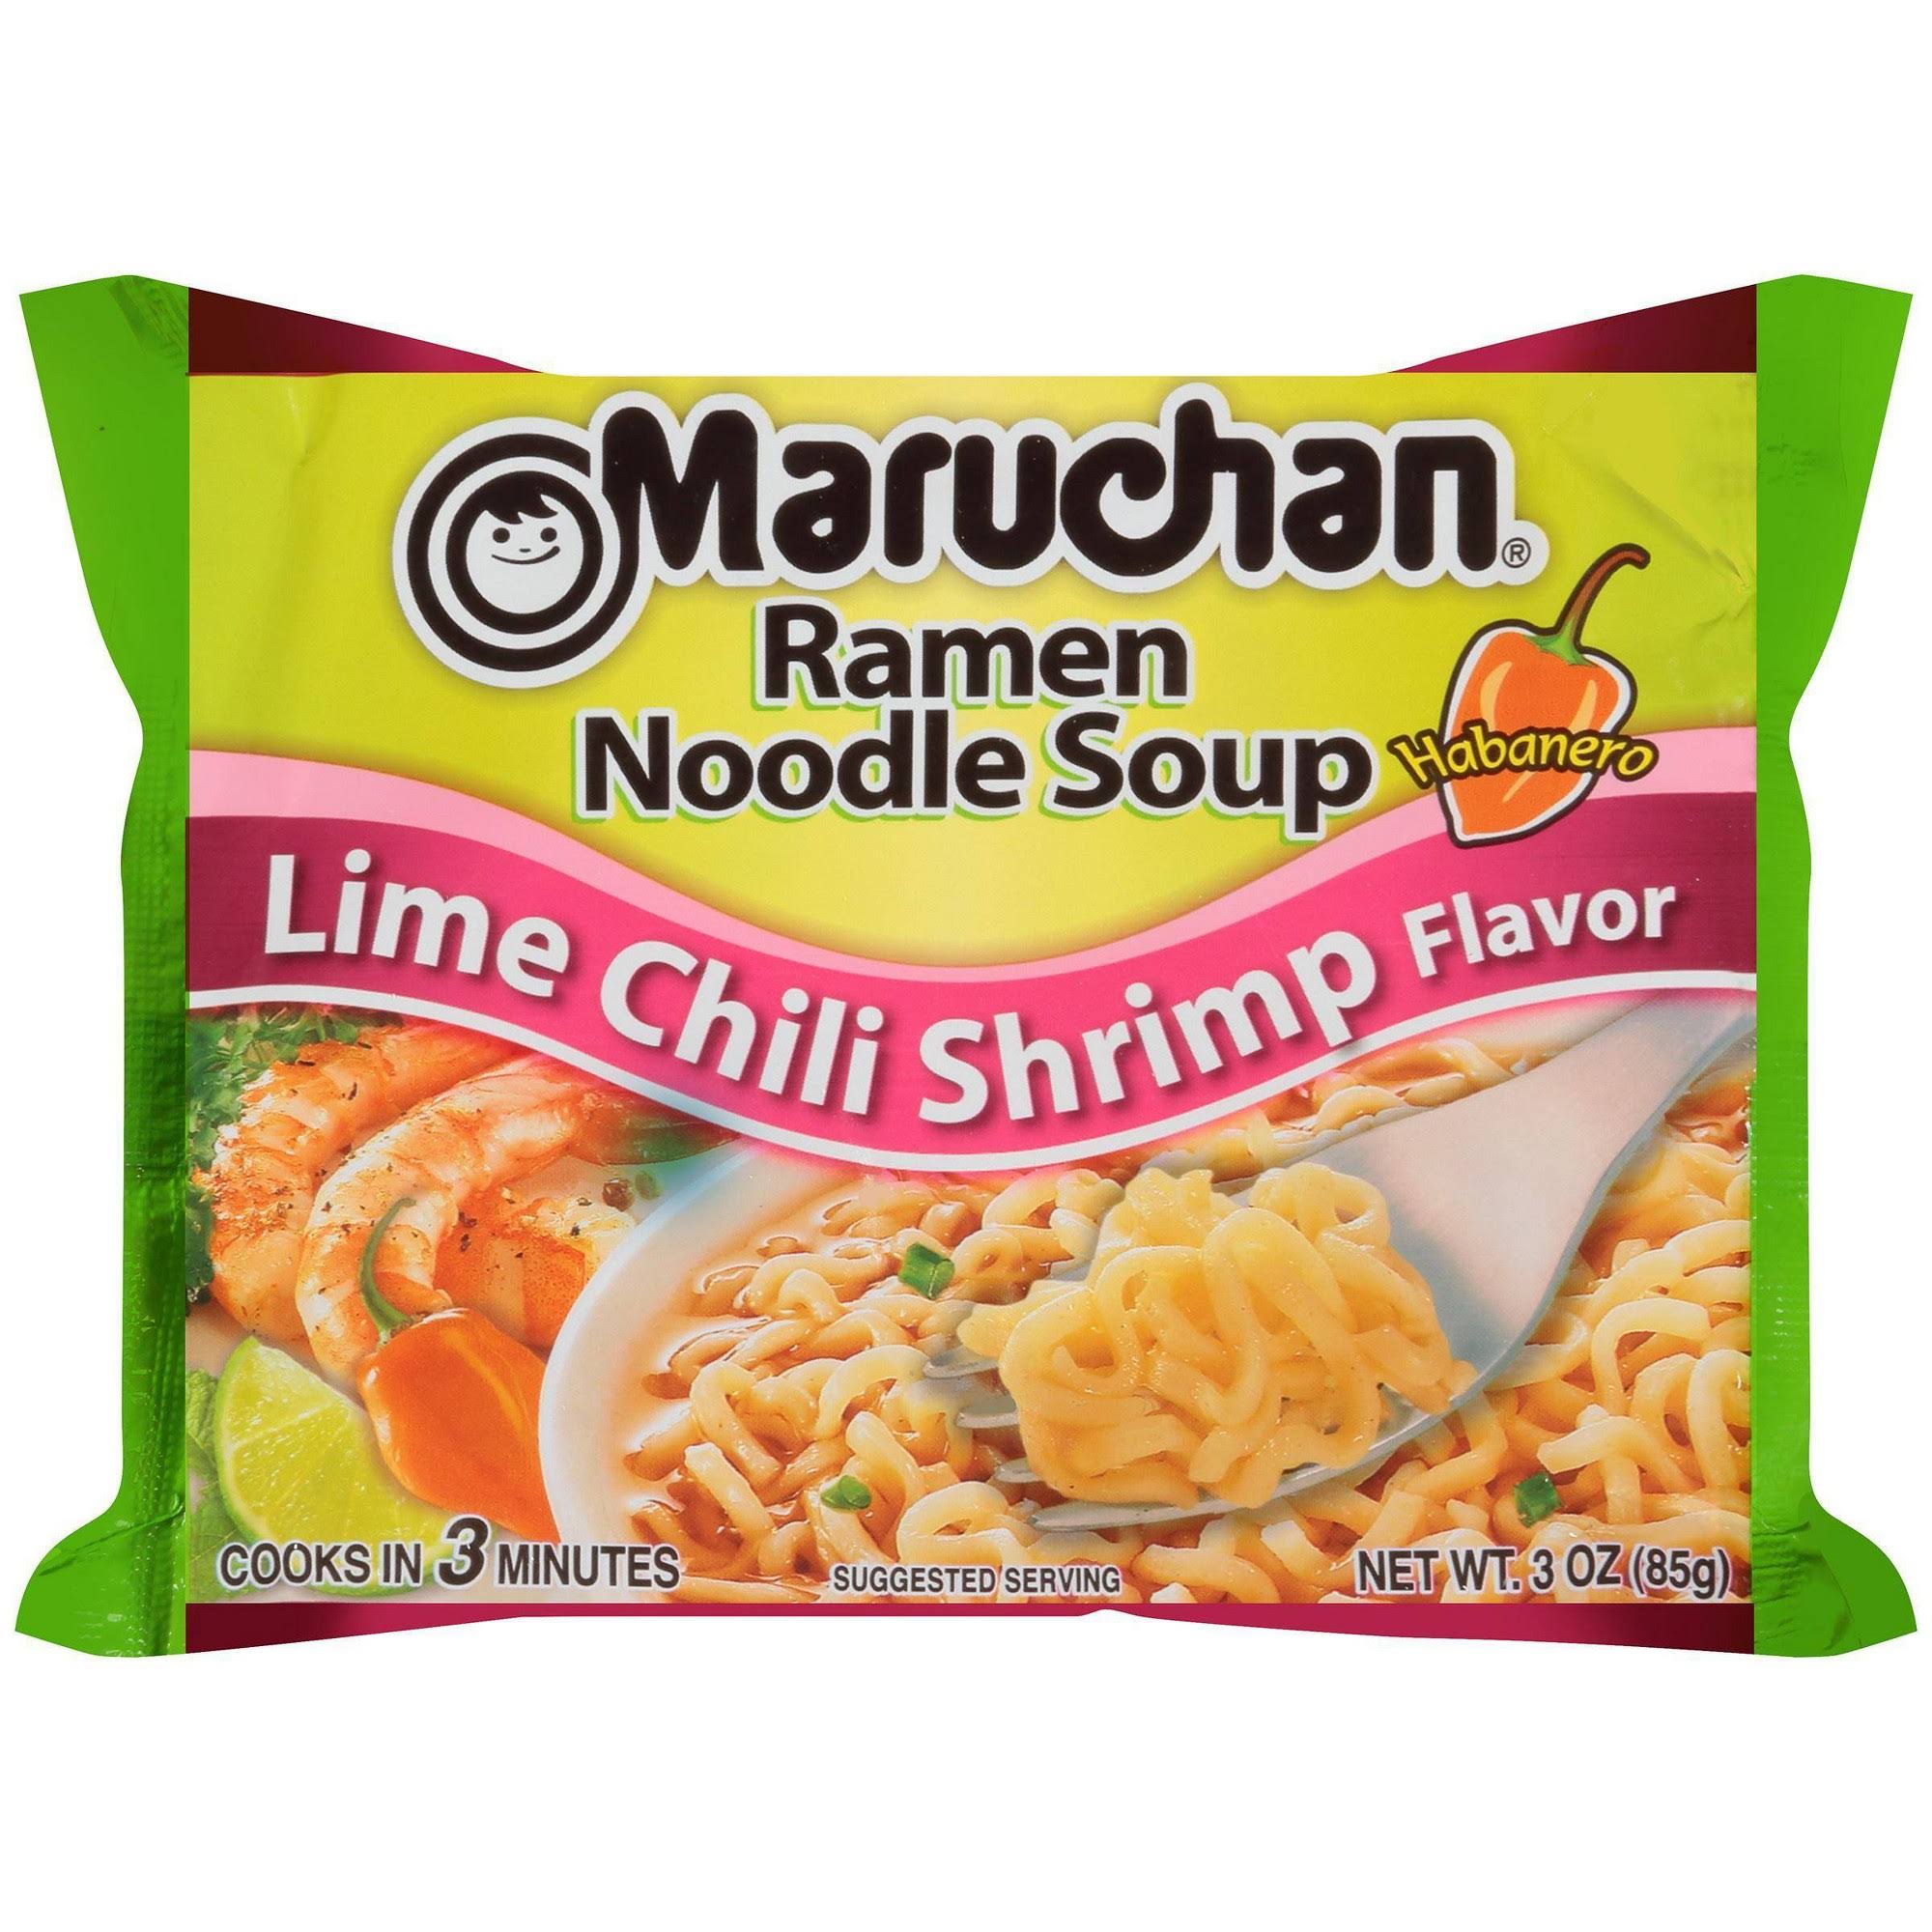 Maruchan Ramen Noodle Soup - Lime Chili Shrimp, 3oz